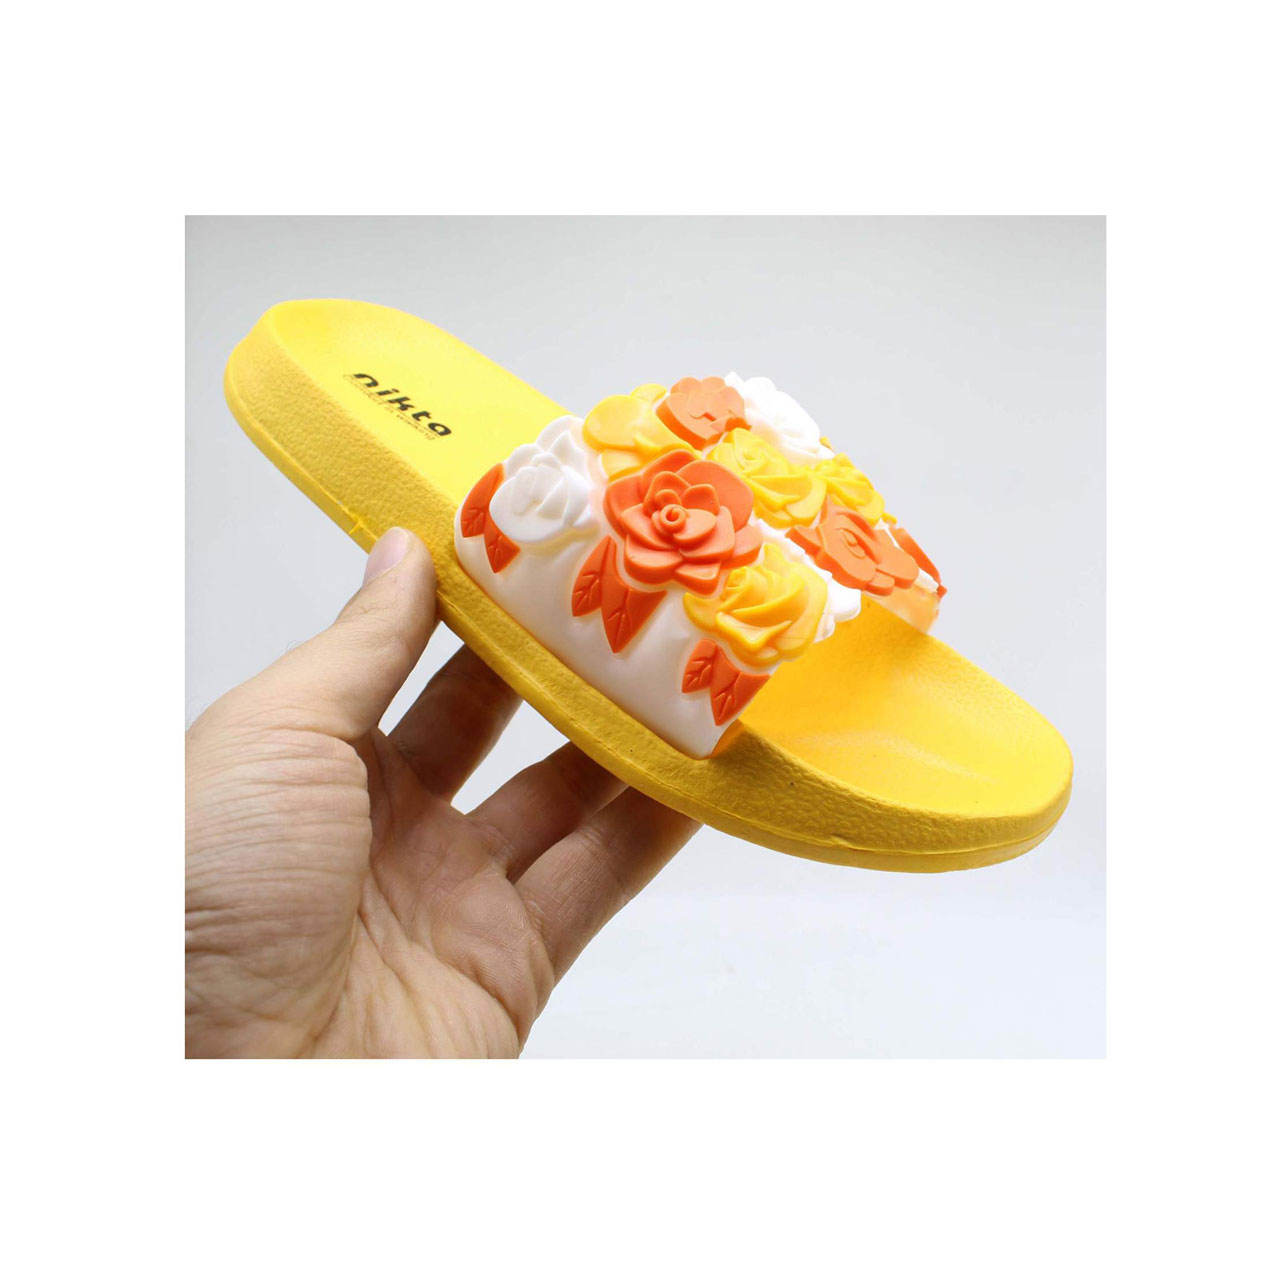 دمپایی دخترانه مدل گل کد 04-397 رنگ زرد -  - 3